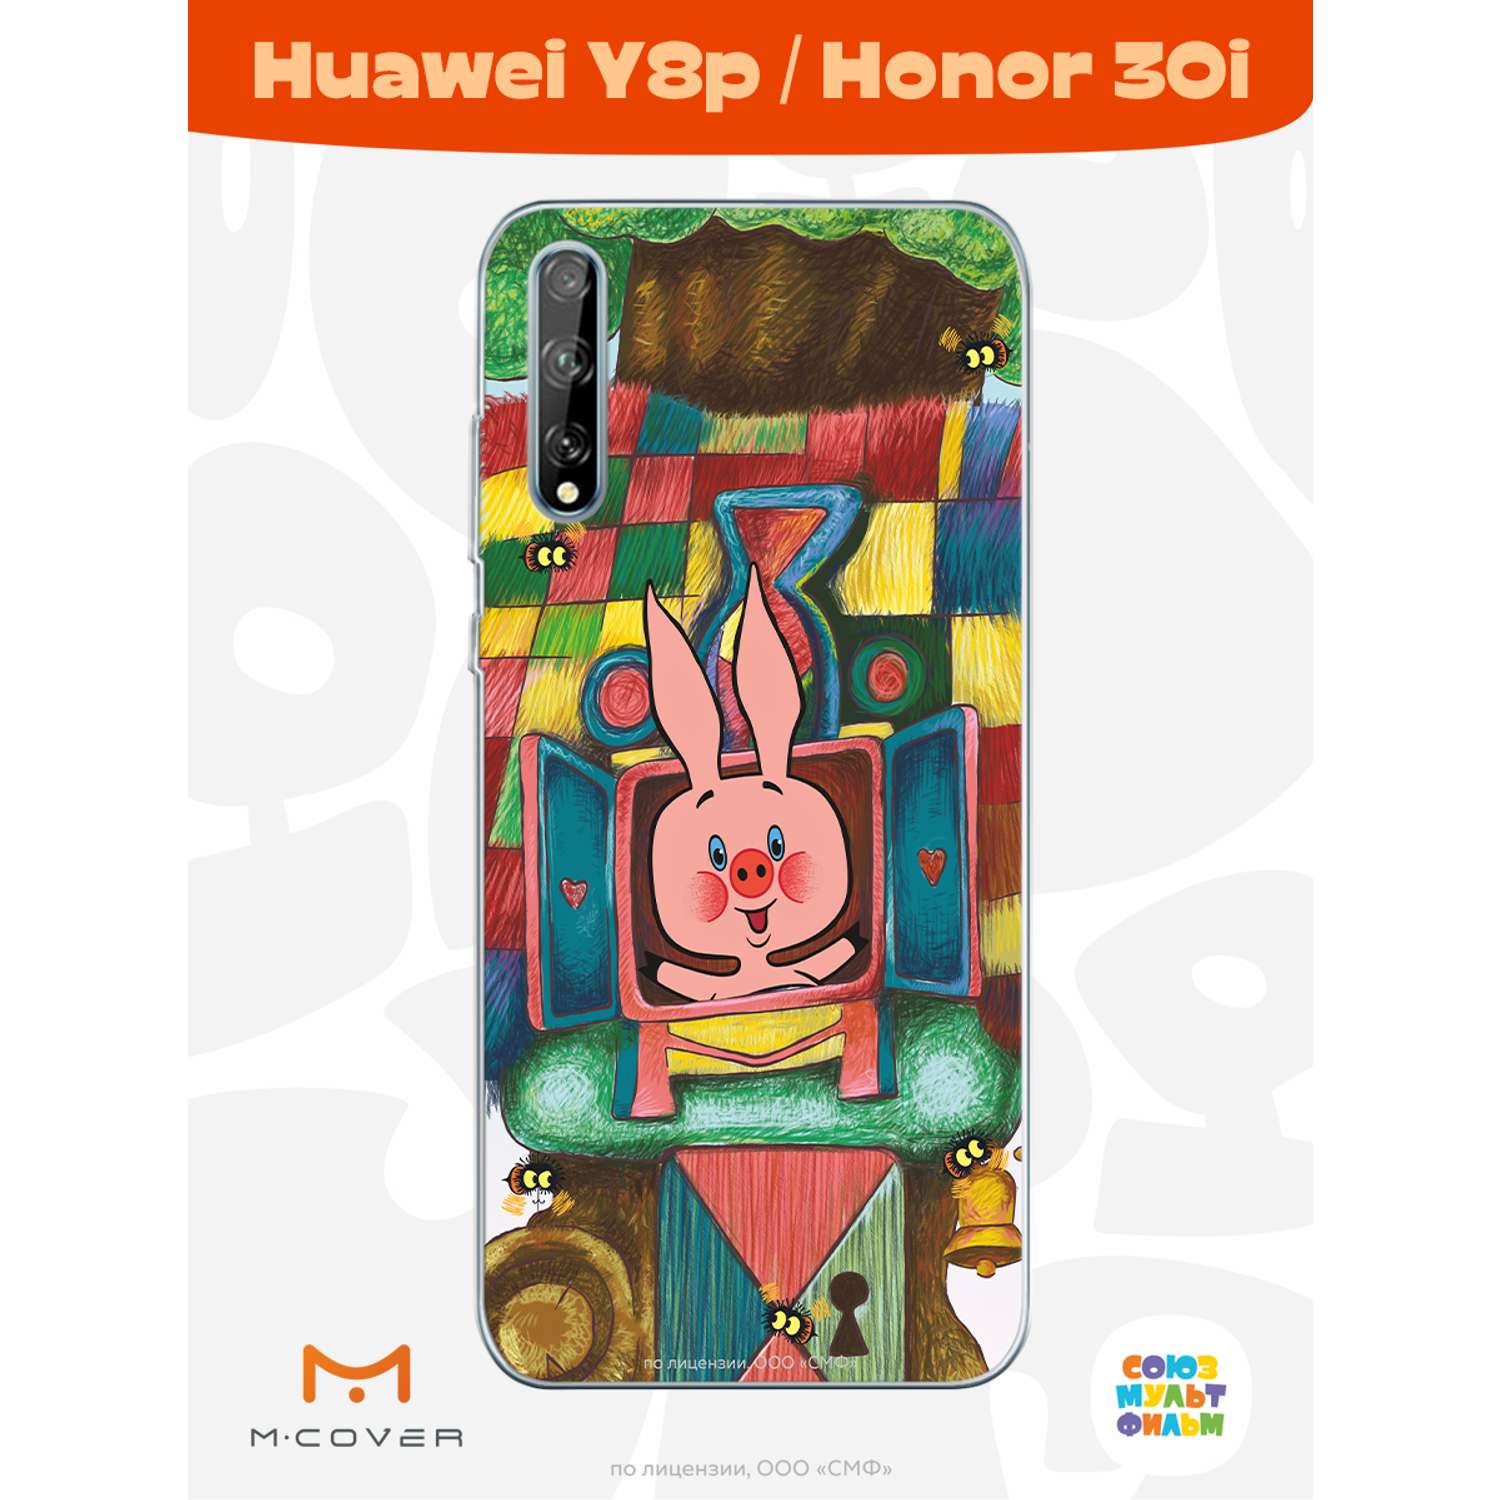 Силиконовый чехол Mcover для смартфона Huawei Y8p Honor 30i Союзмультфильм Довольный Пятачок - фото 2